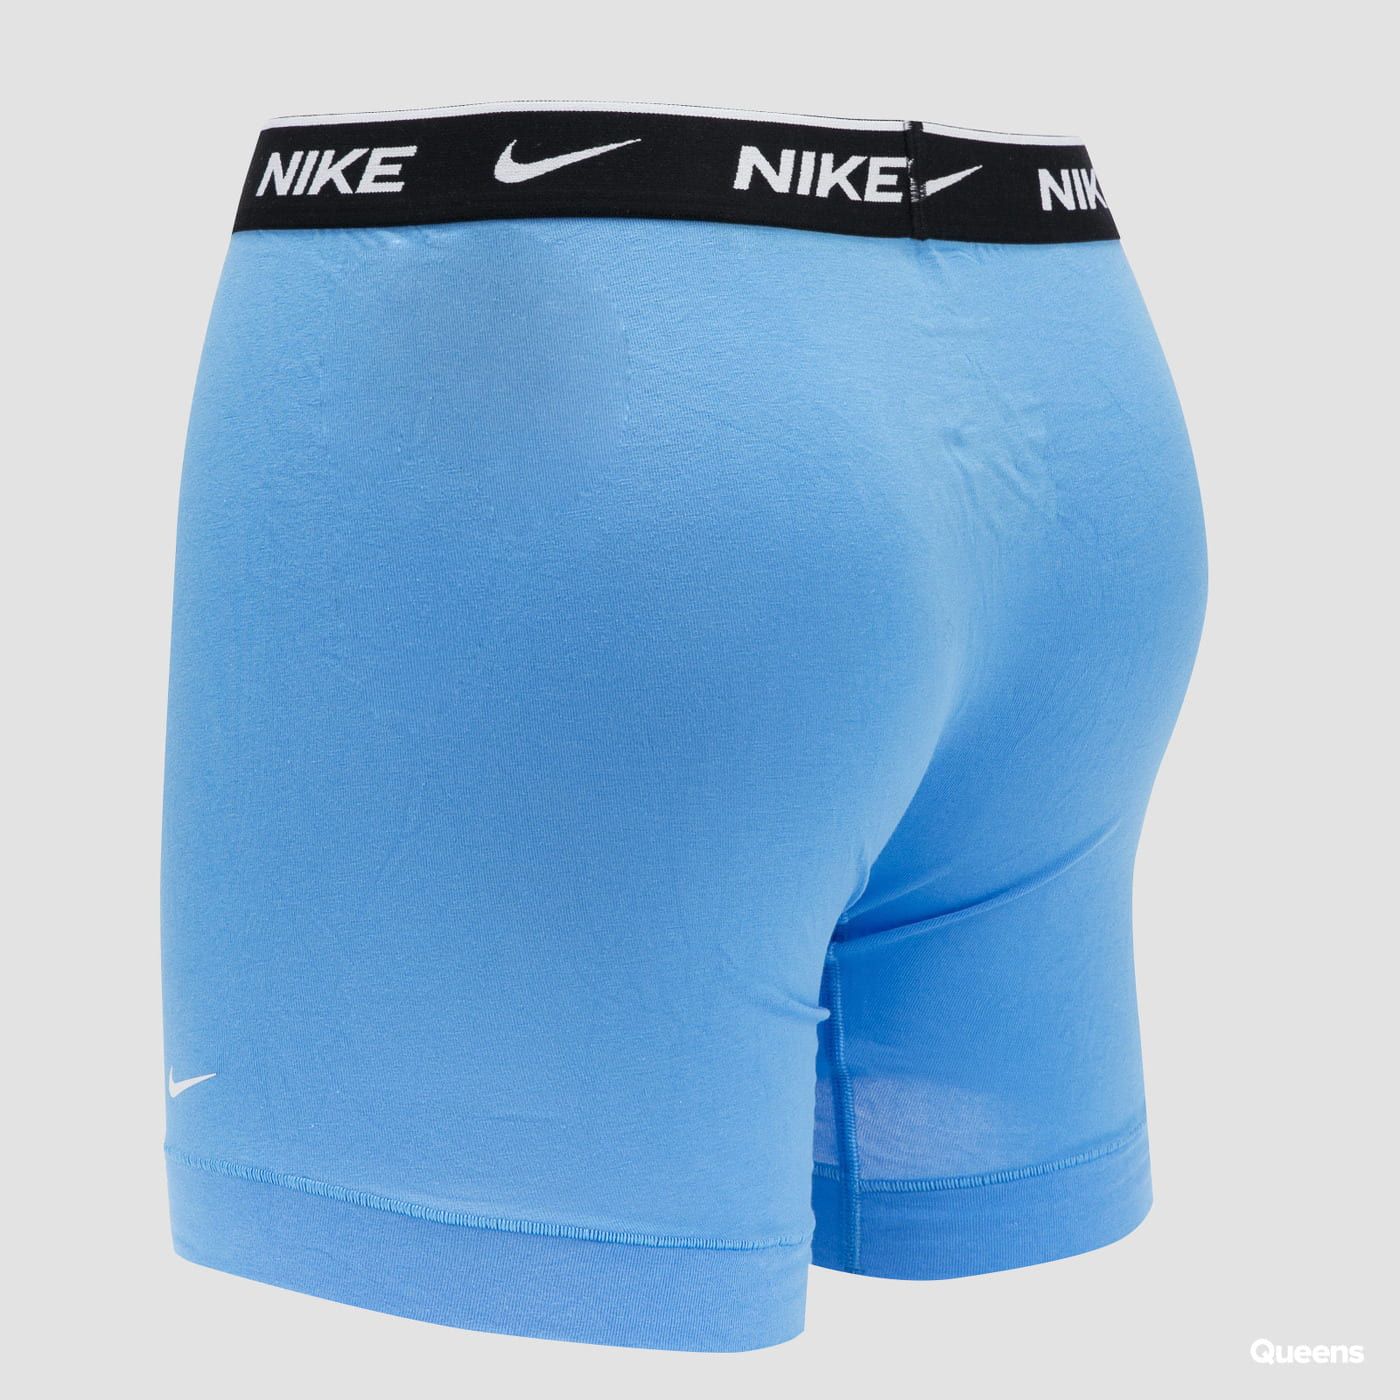 Nike Brief 3 Pack Boxers